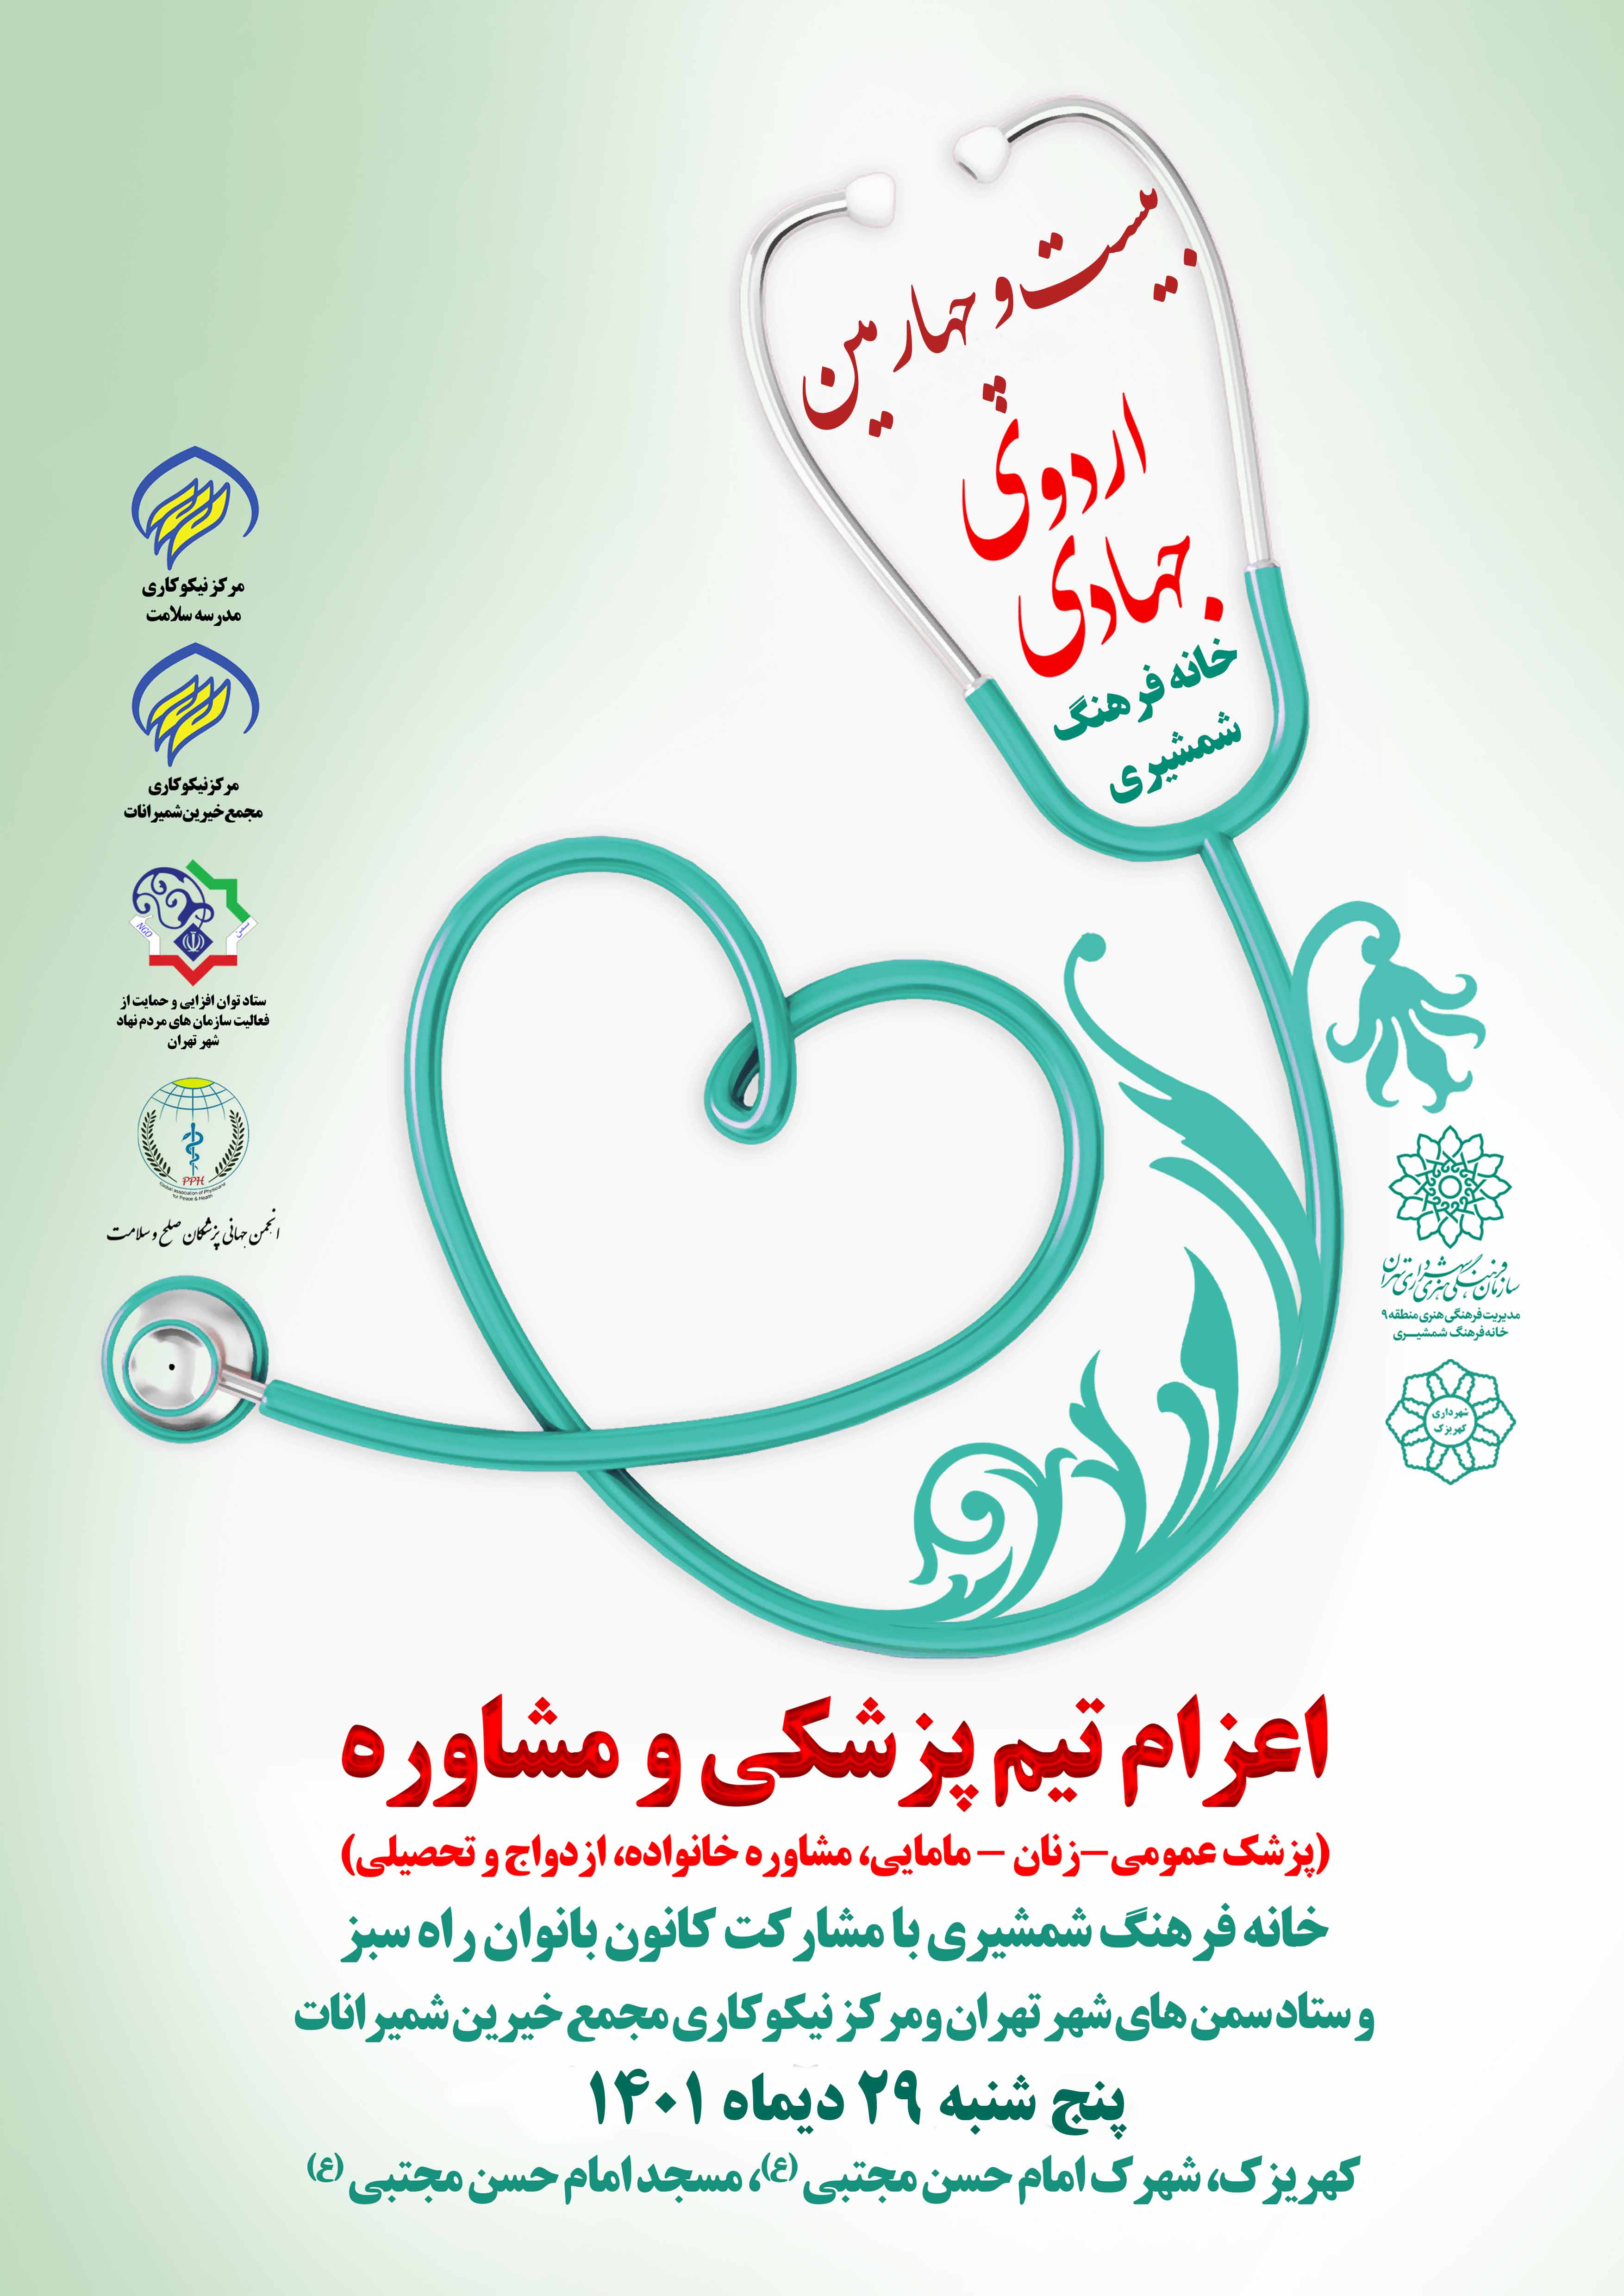 بیست و چهارمین اردوی جهادی ، اعزام تیم پزشکی به کهریزک